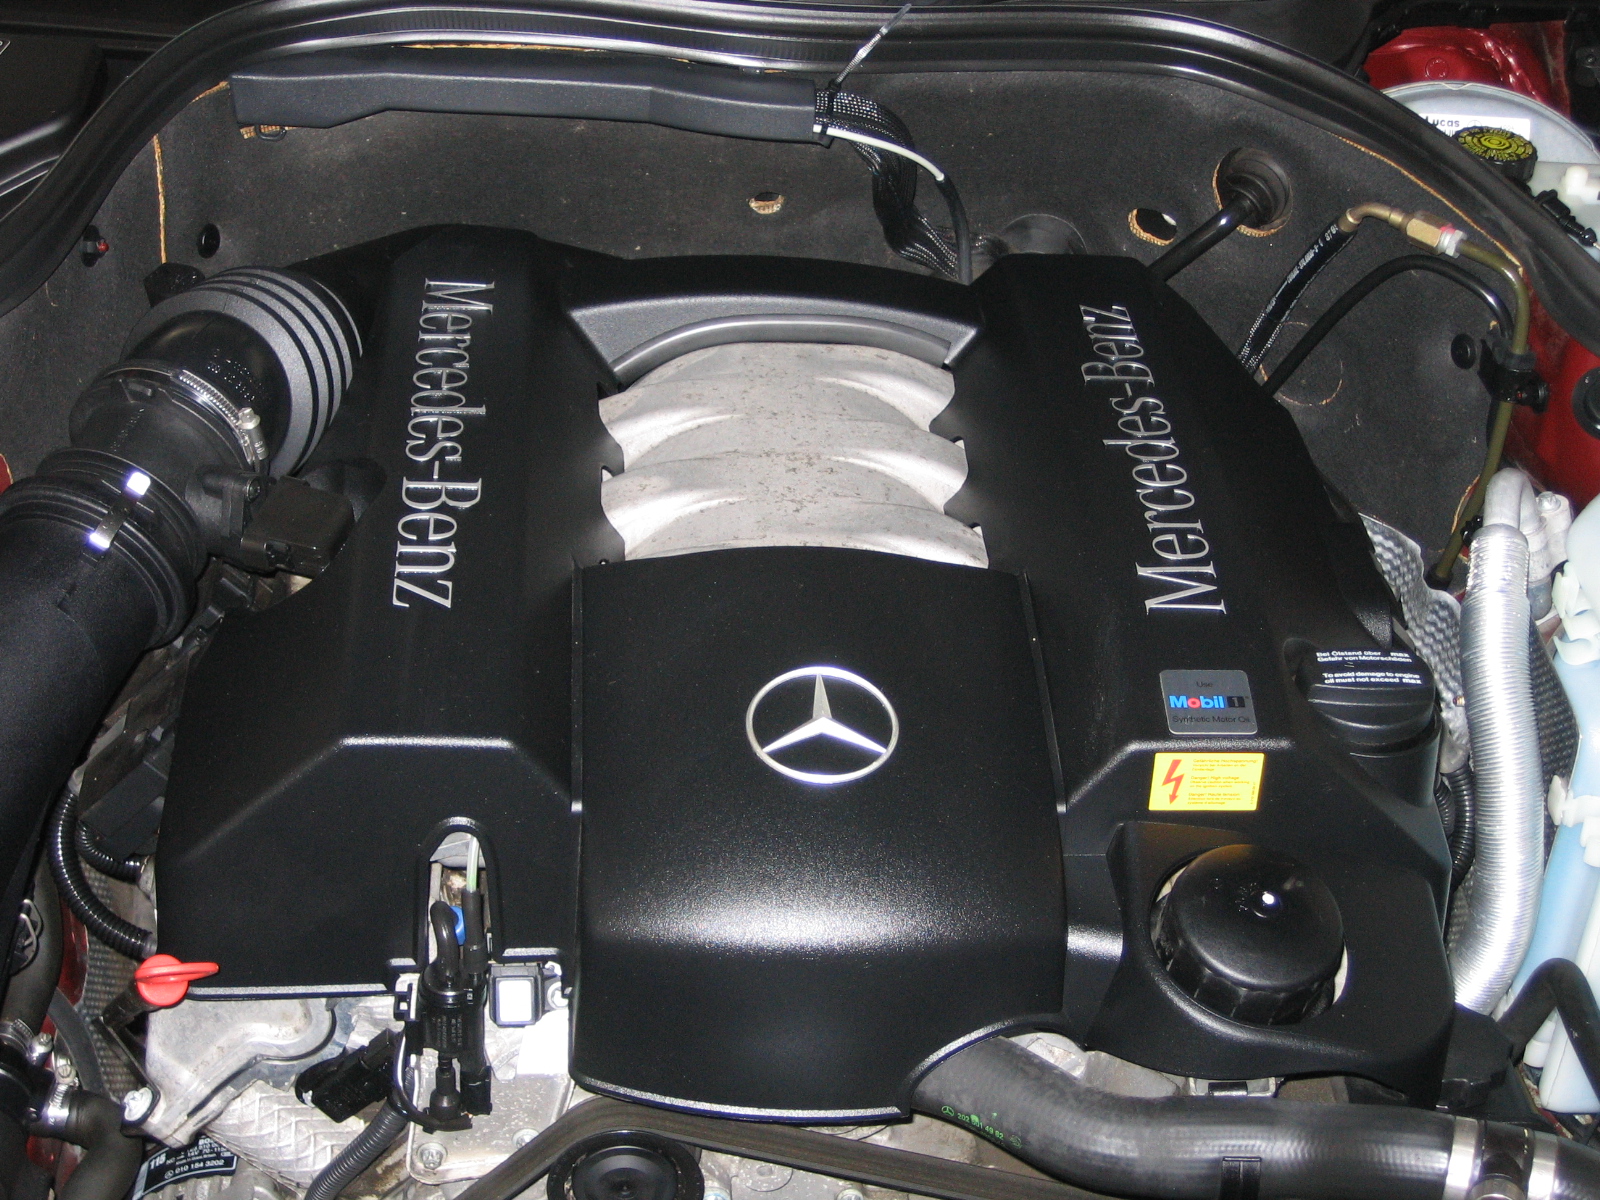 1999 Mercedes c280 engine specs #3